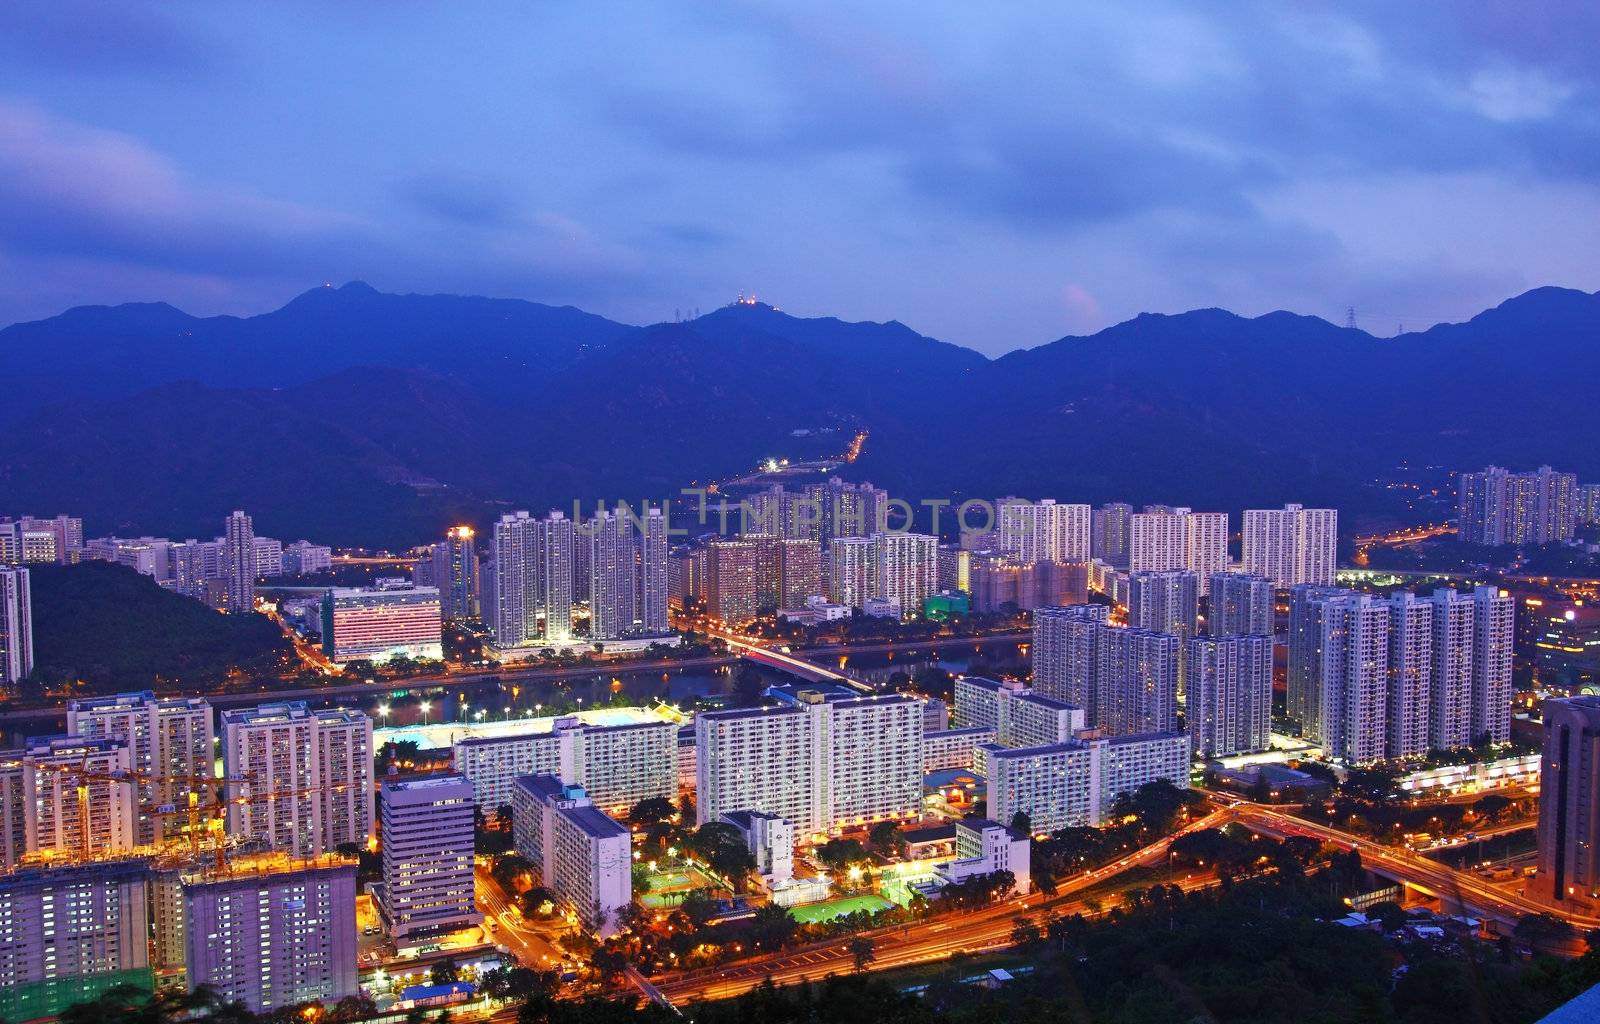 Hong Kong apartments at night by kawing921